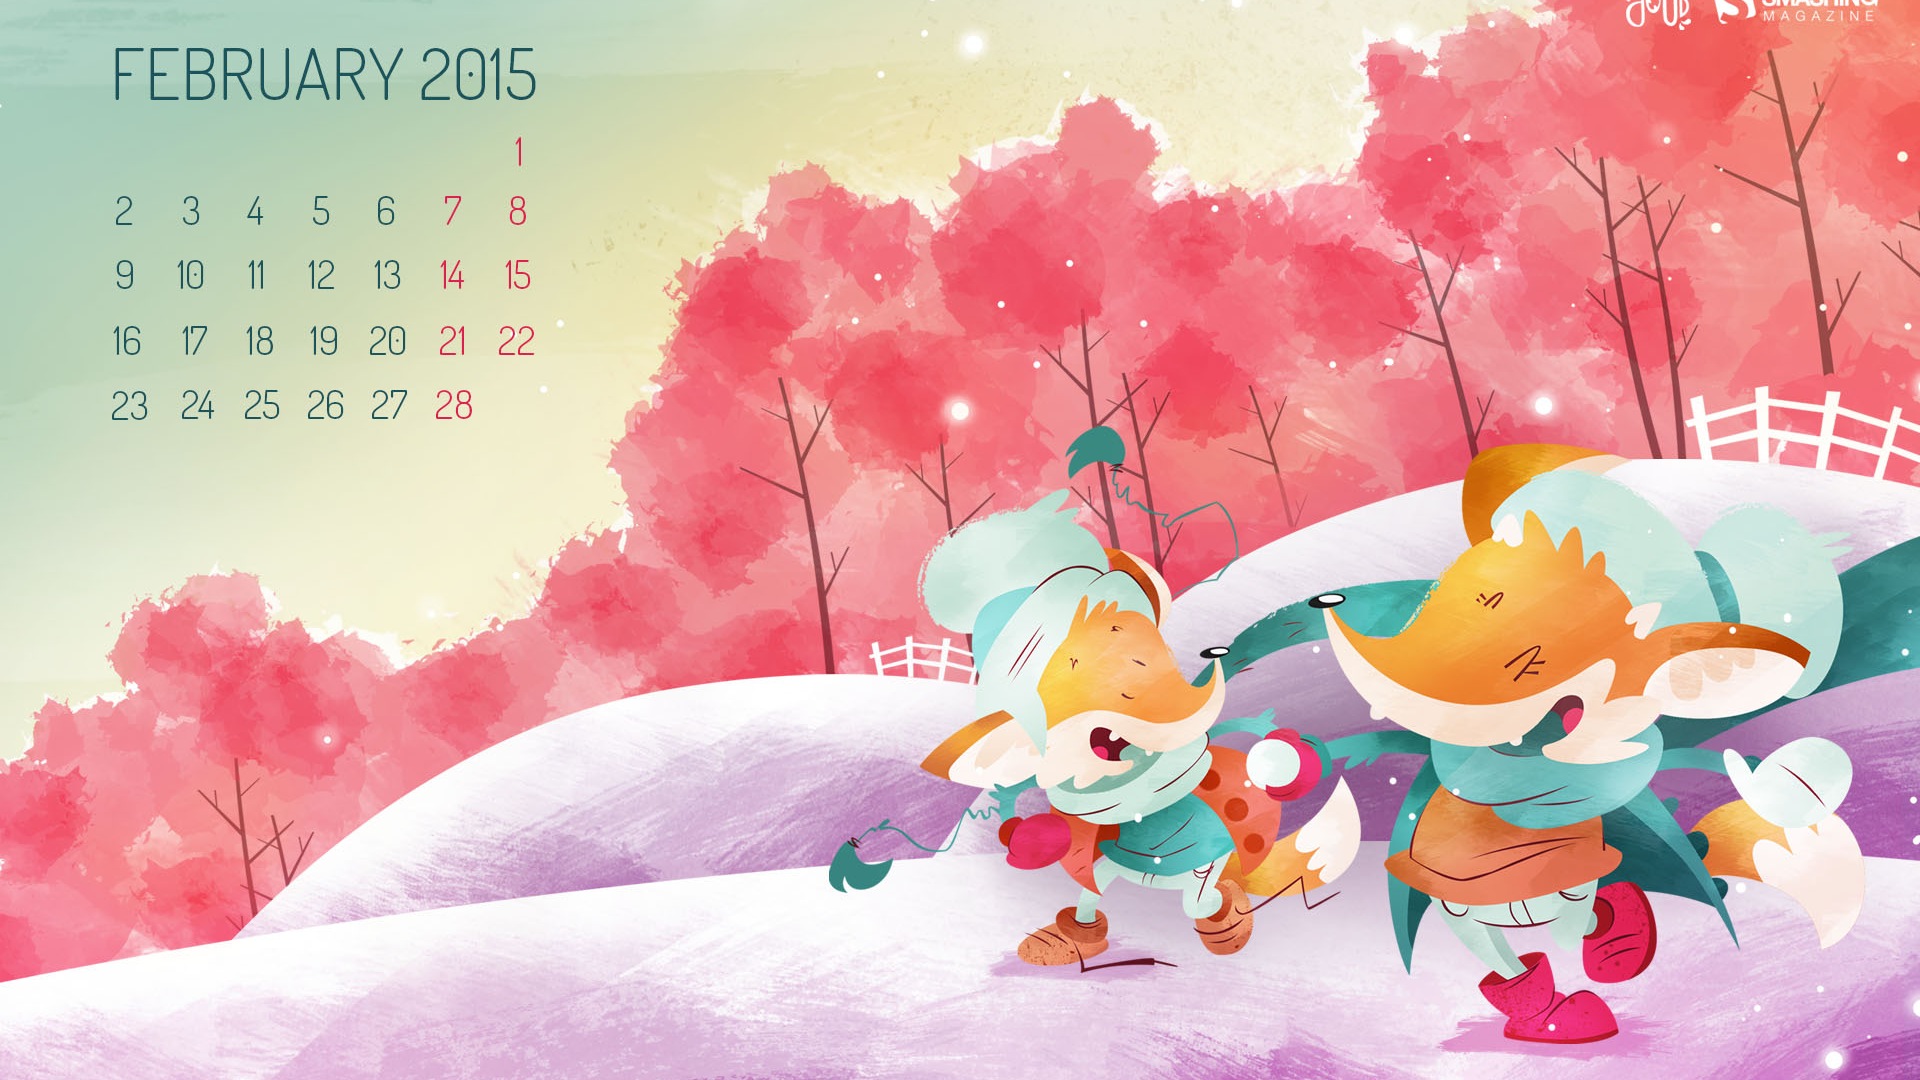 February 2015 Calendar wallpaper (2) #1 - 1920x1080